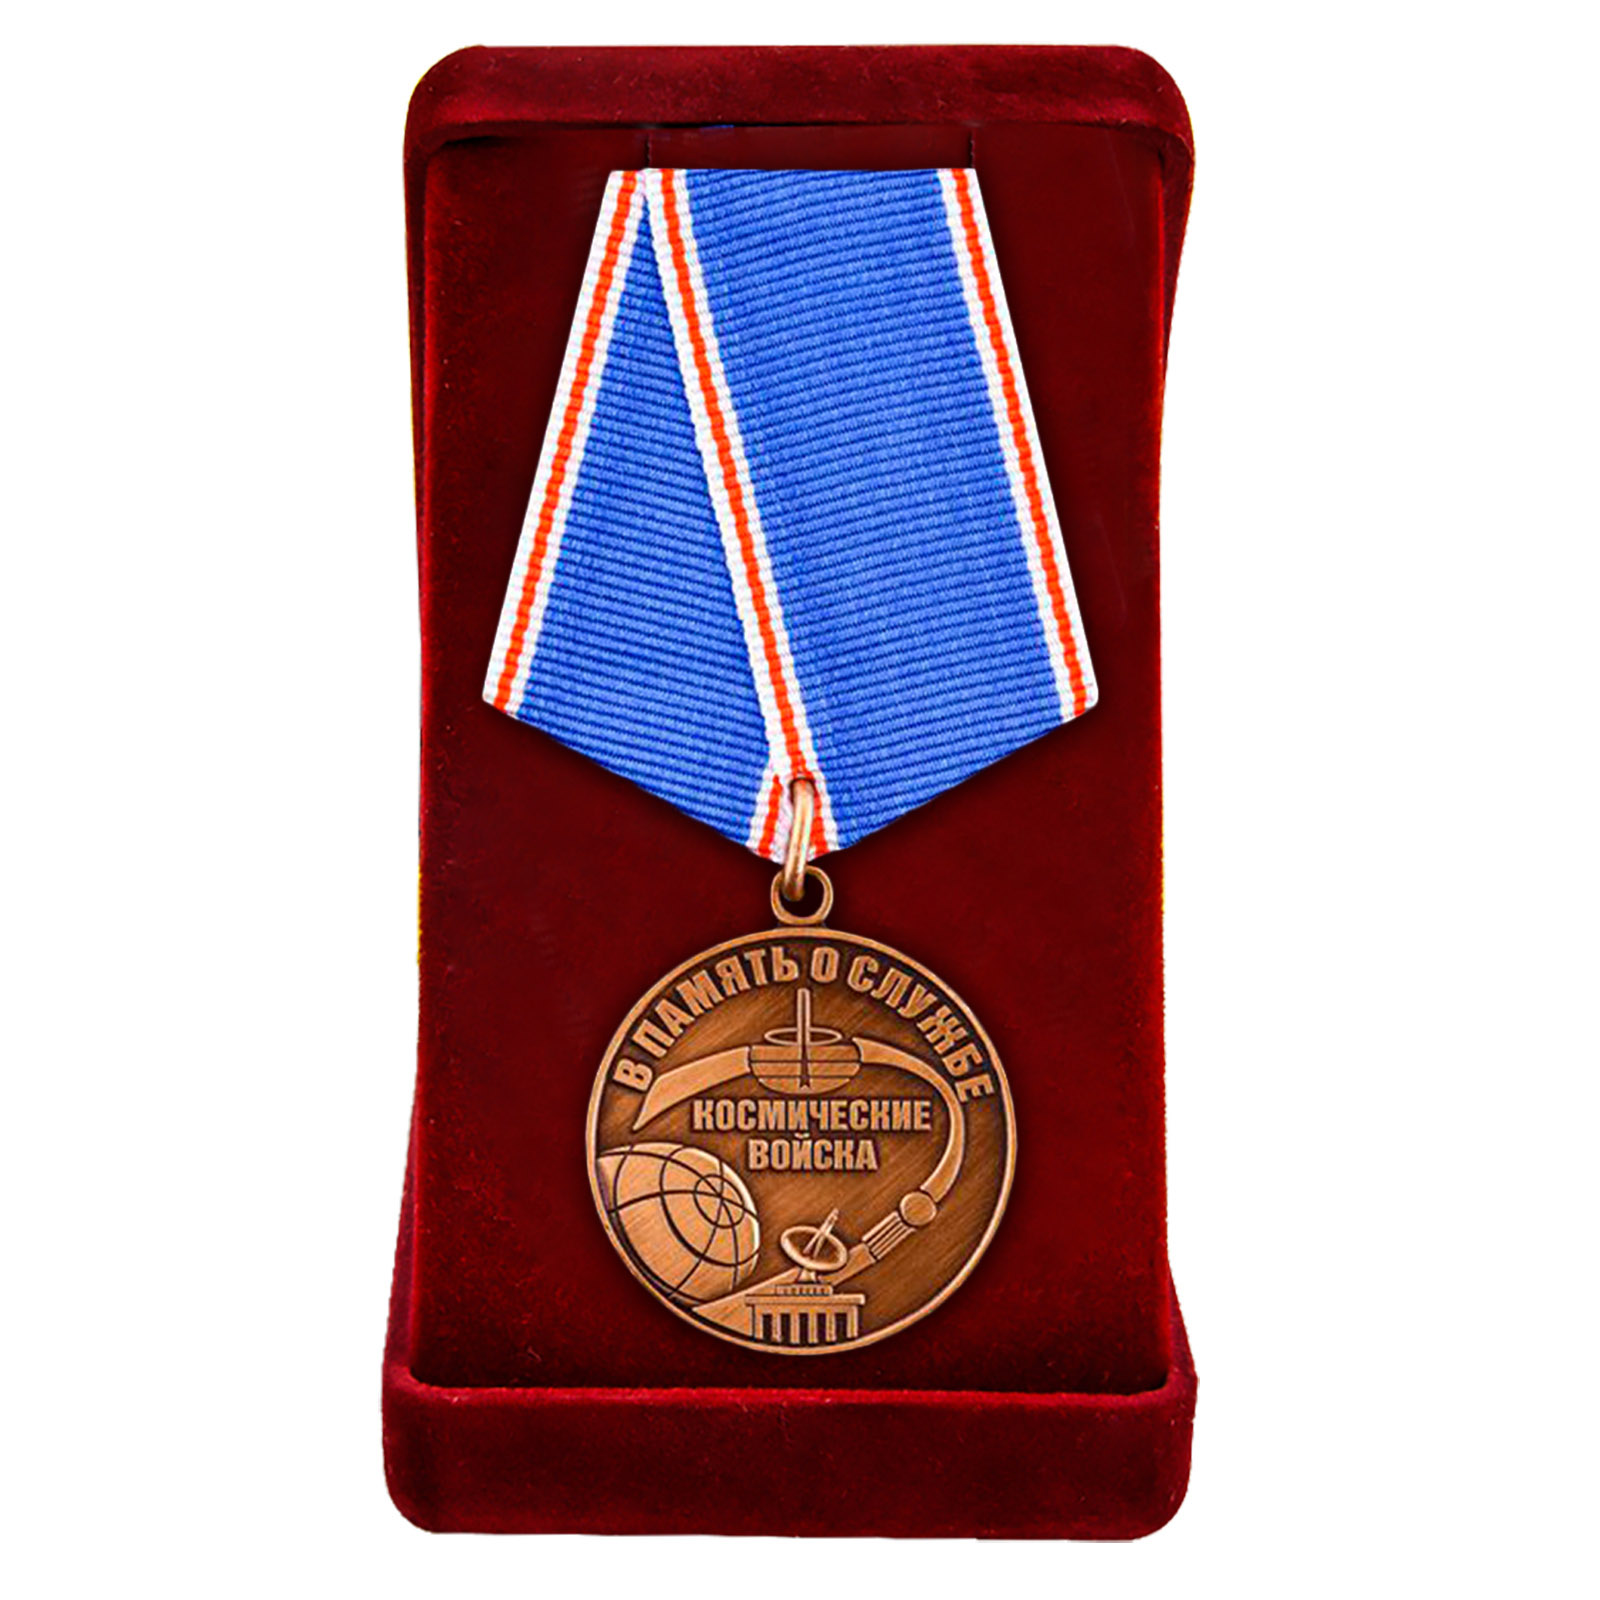 Купить общественную медаль Космических войск В память о службе в подарок